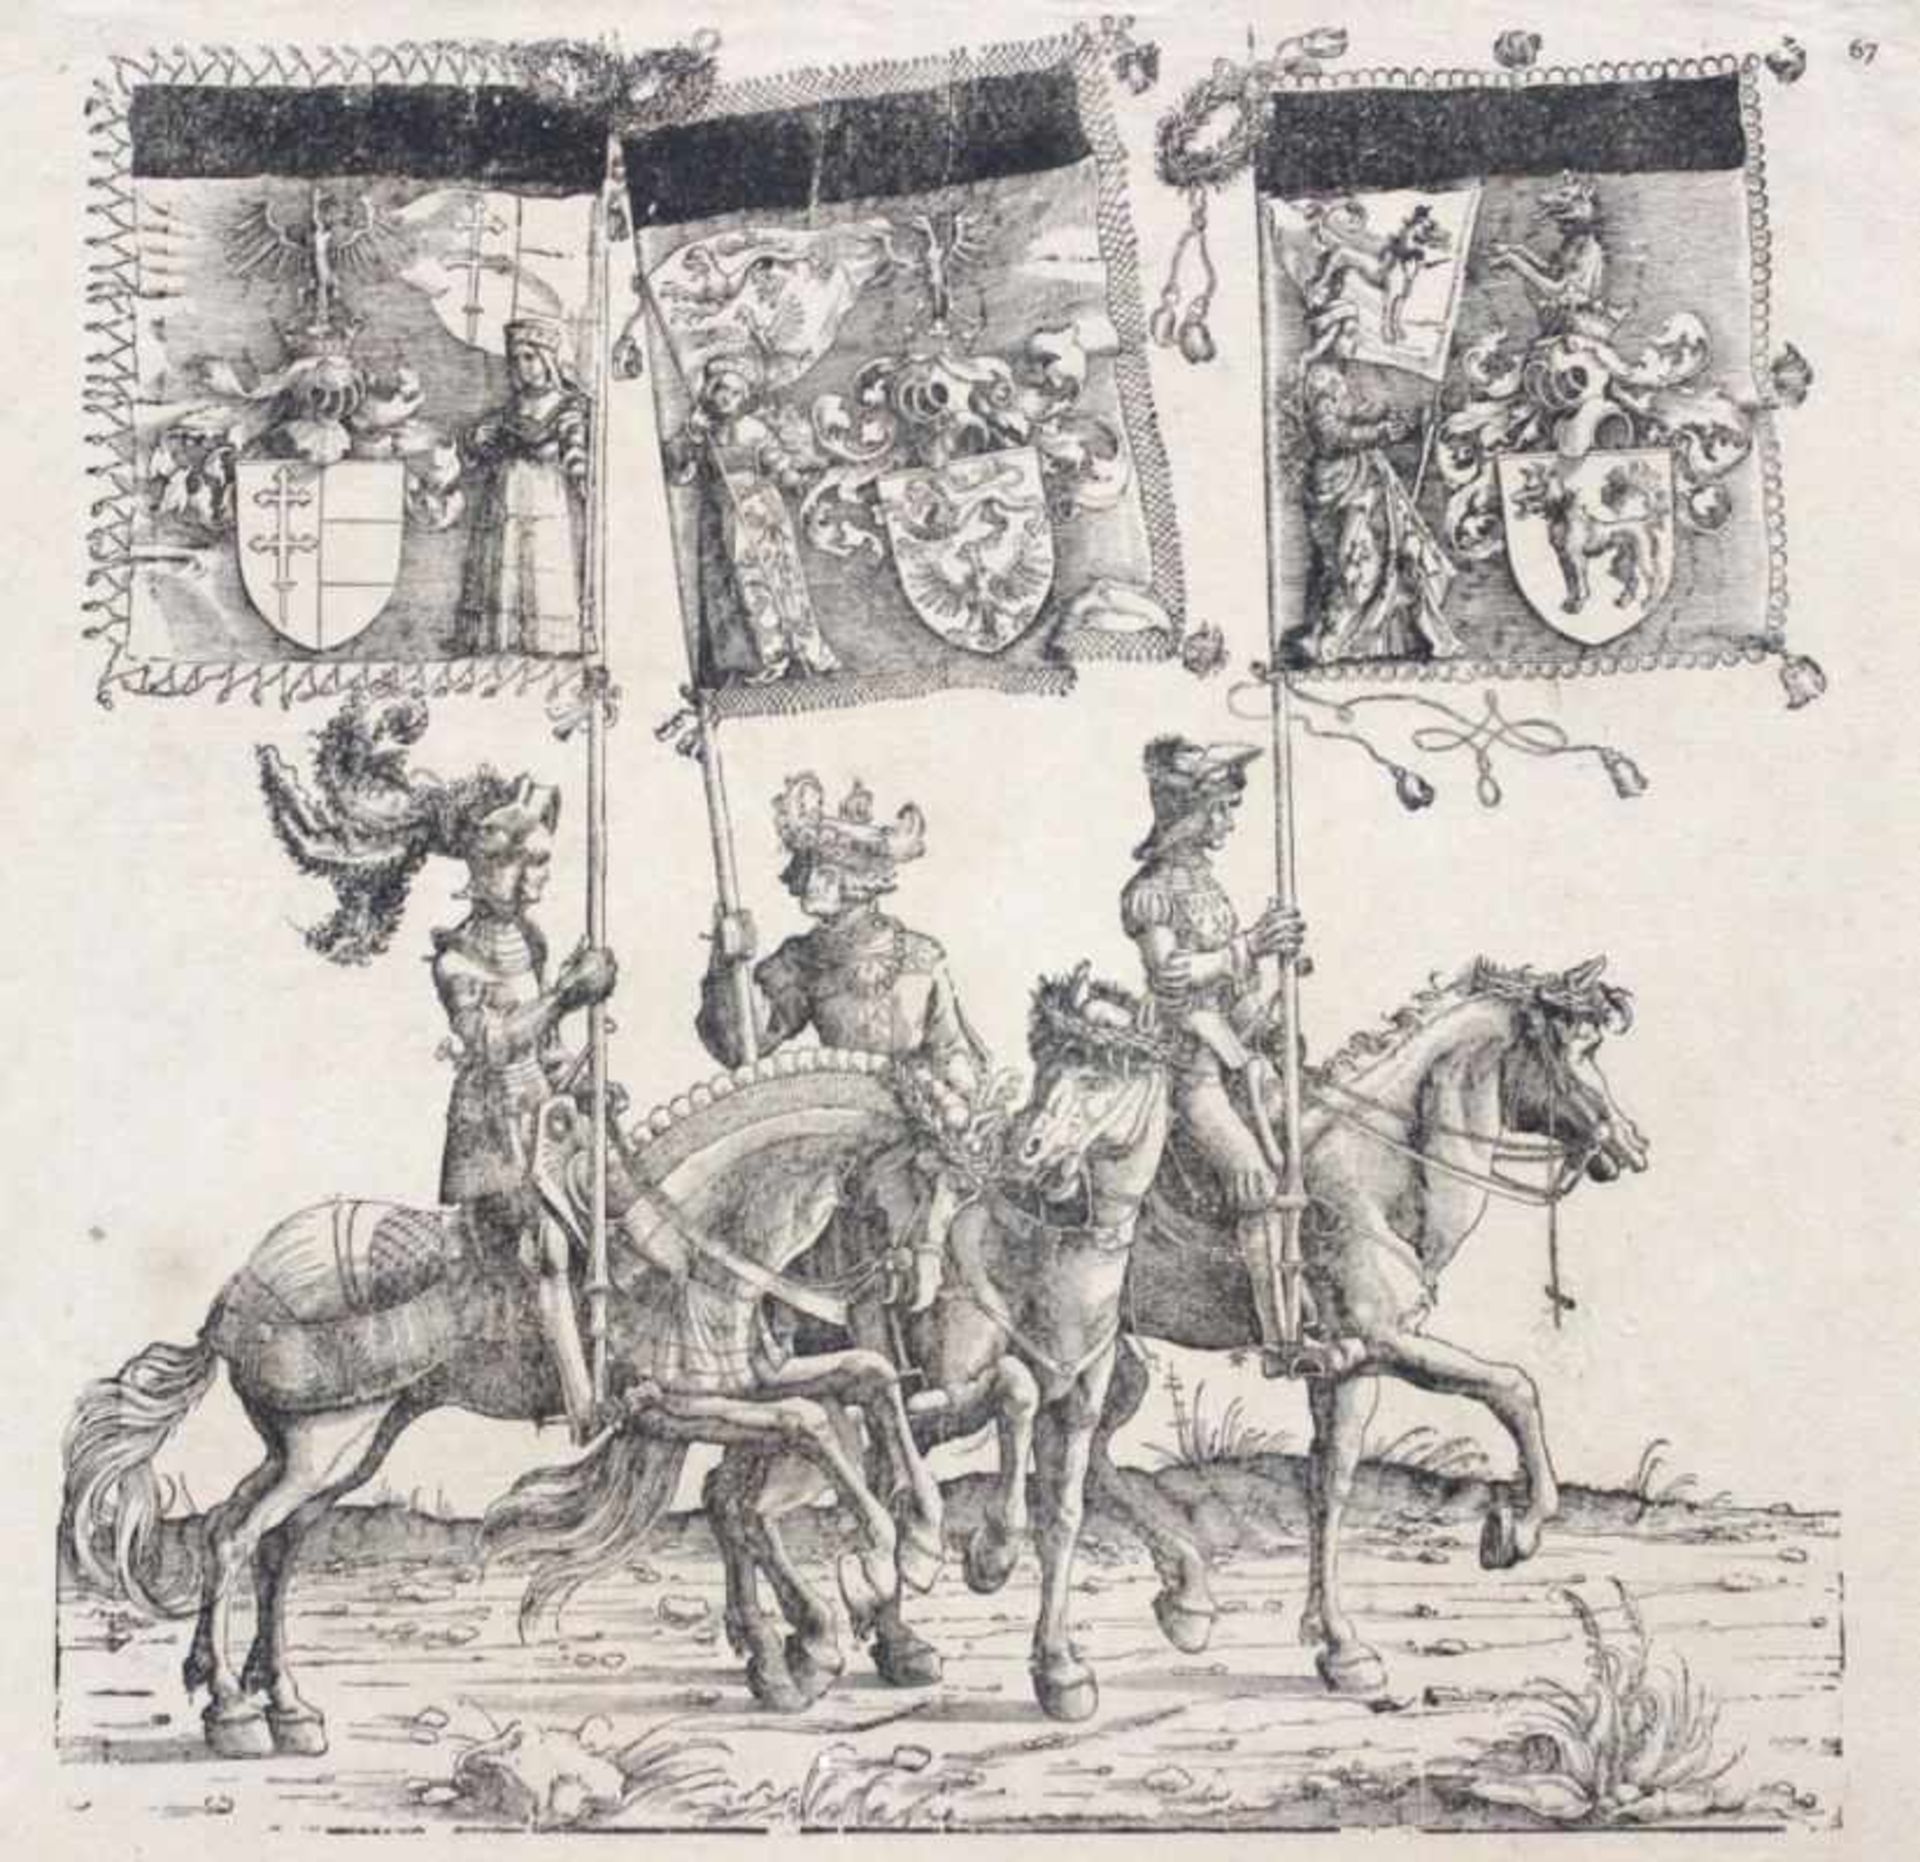 Holzschnitt - Albrecht Altdorfer (1480 Altdorf - 1538 Regensburg) "Triumphzug Kaiser Maximilians -